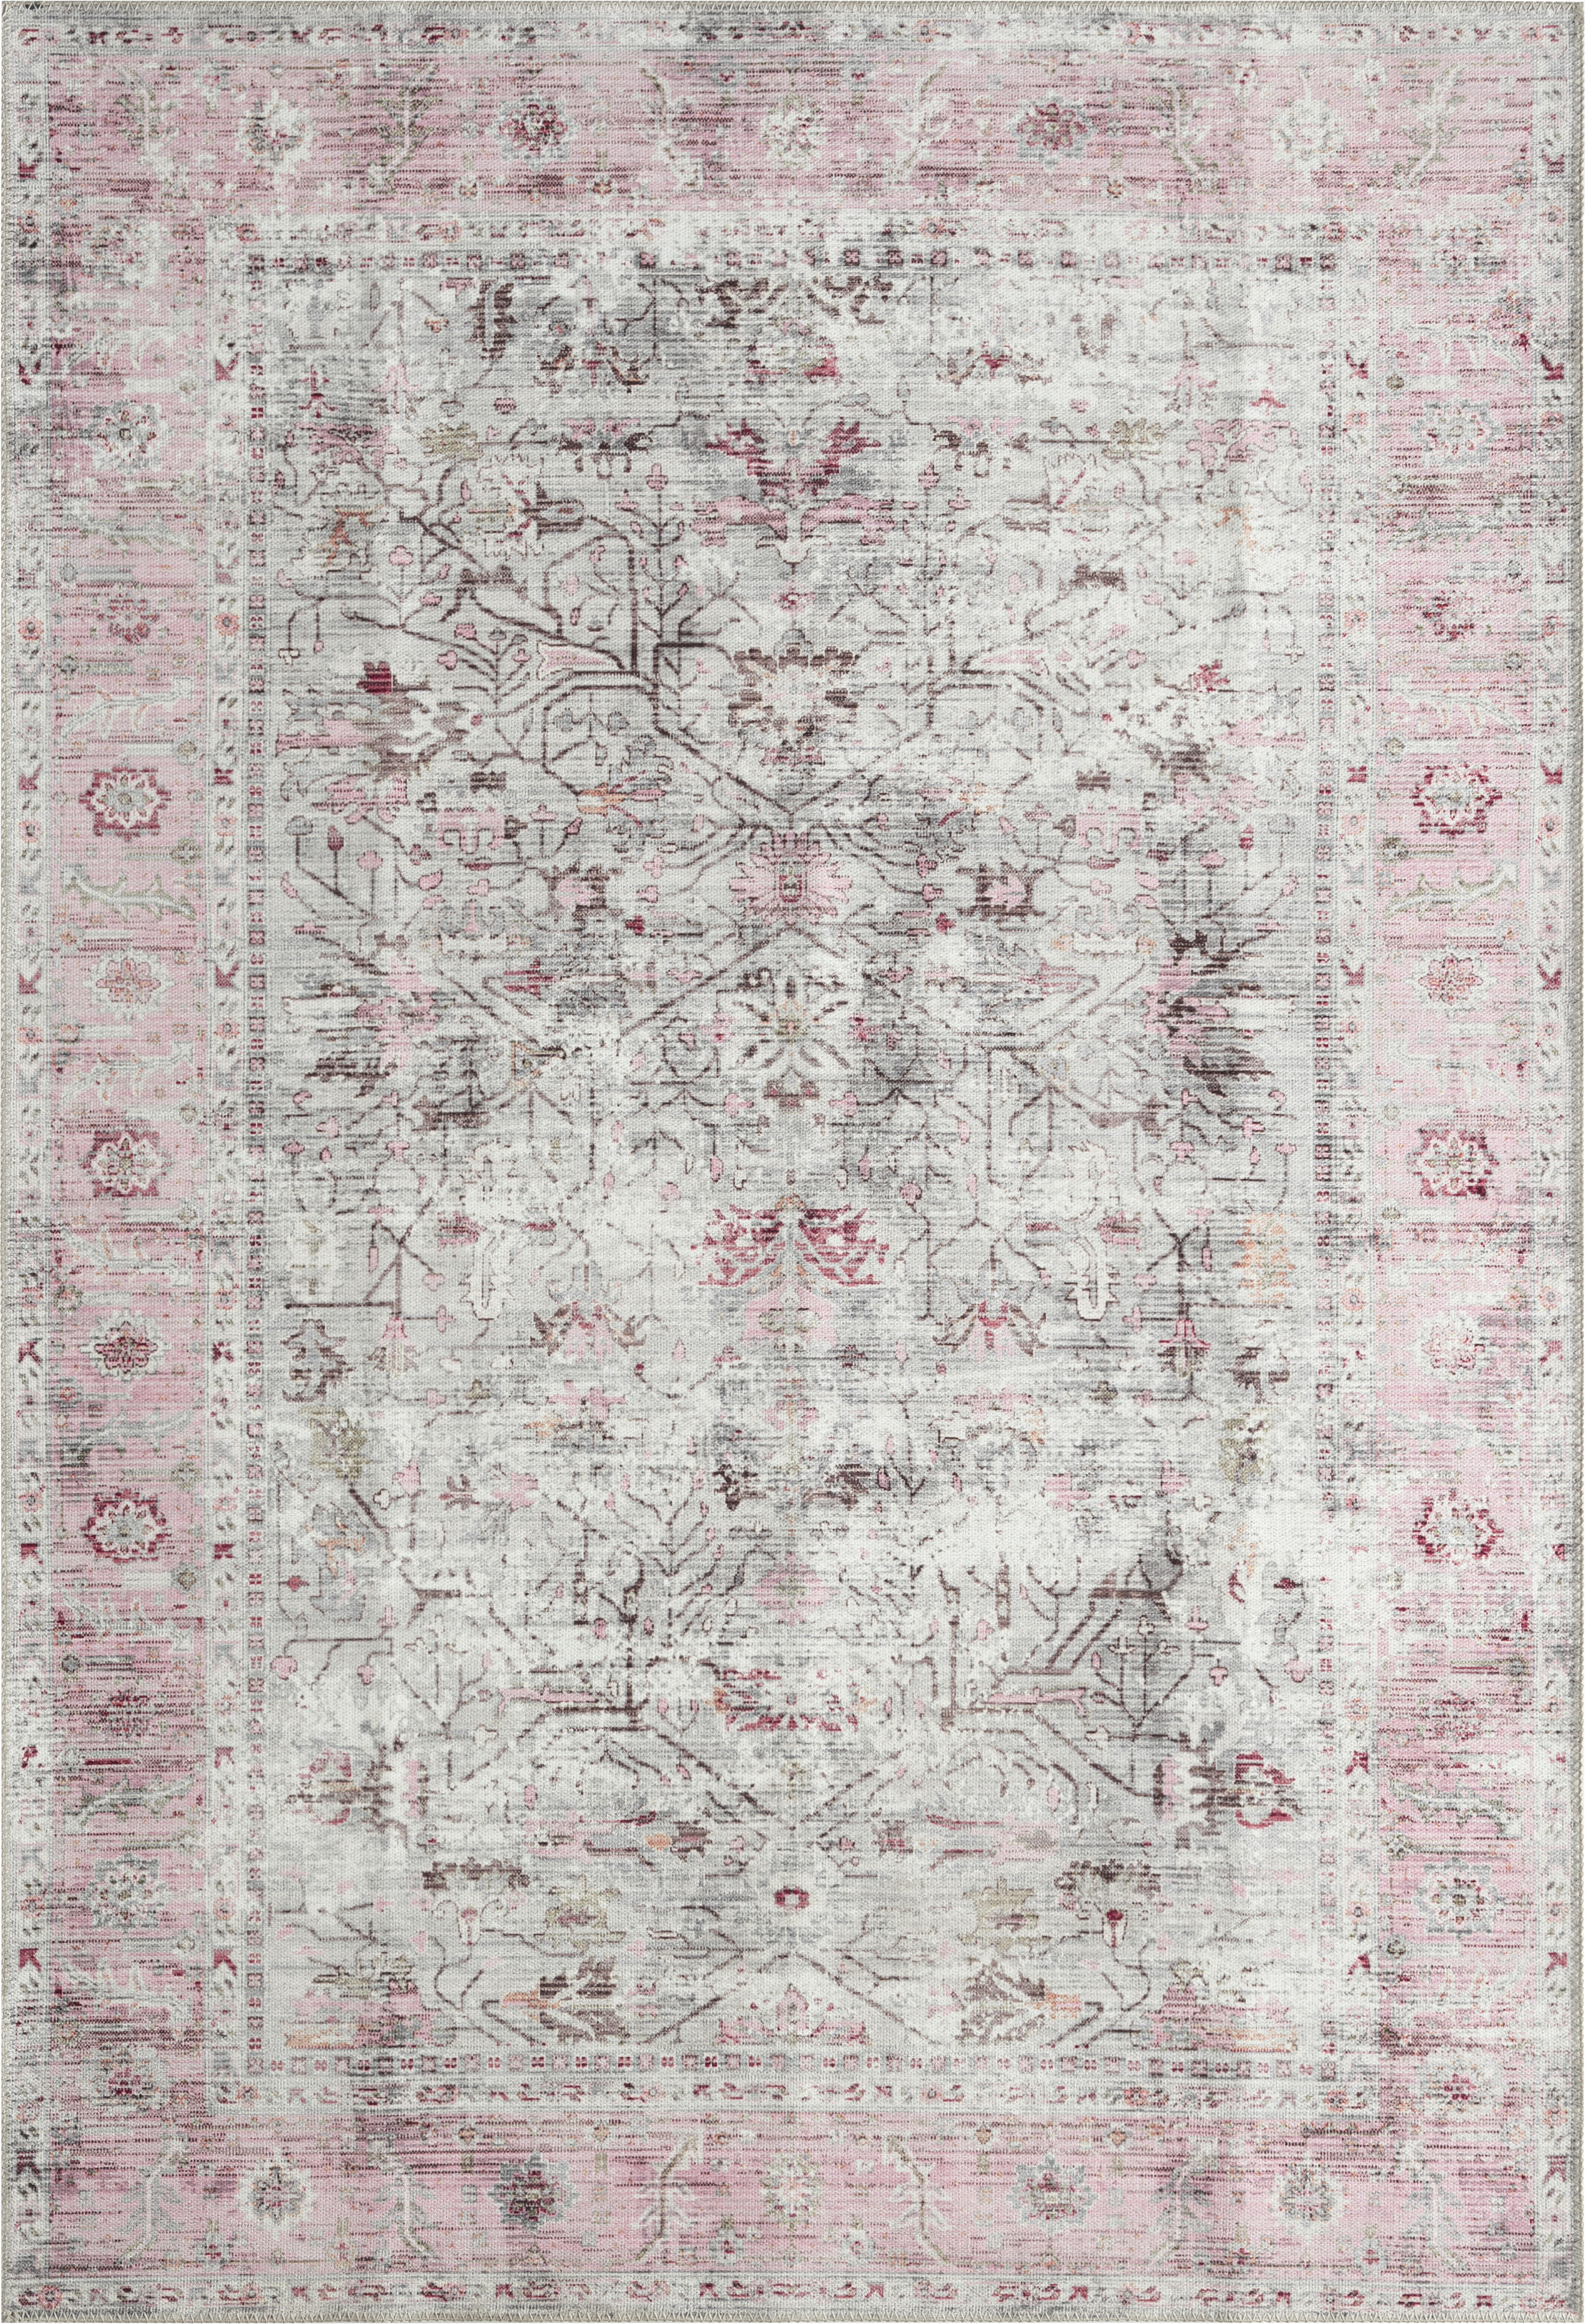 Teppich Edessa Creme B/l: Ca. 80x150 Cm Edessa - pink/creme (80,00/150,00cm)